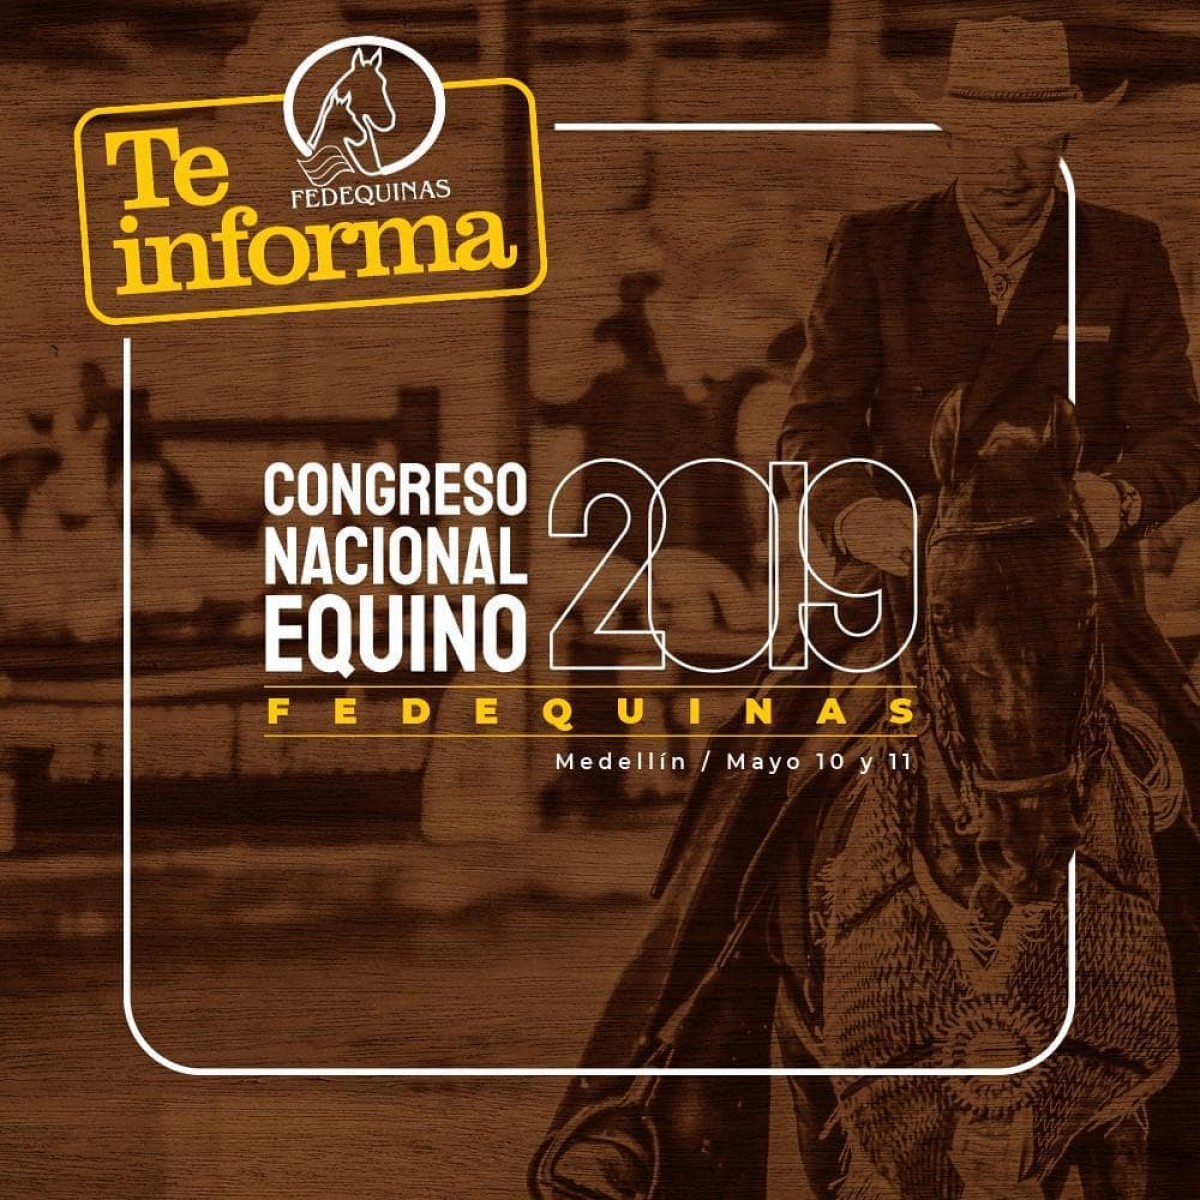 Congreso Nacional Equino Fedequinas 2019, 10 y 11 de Mayo